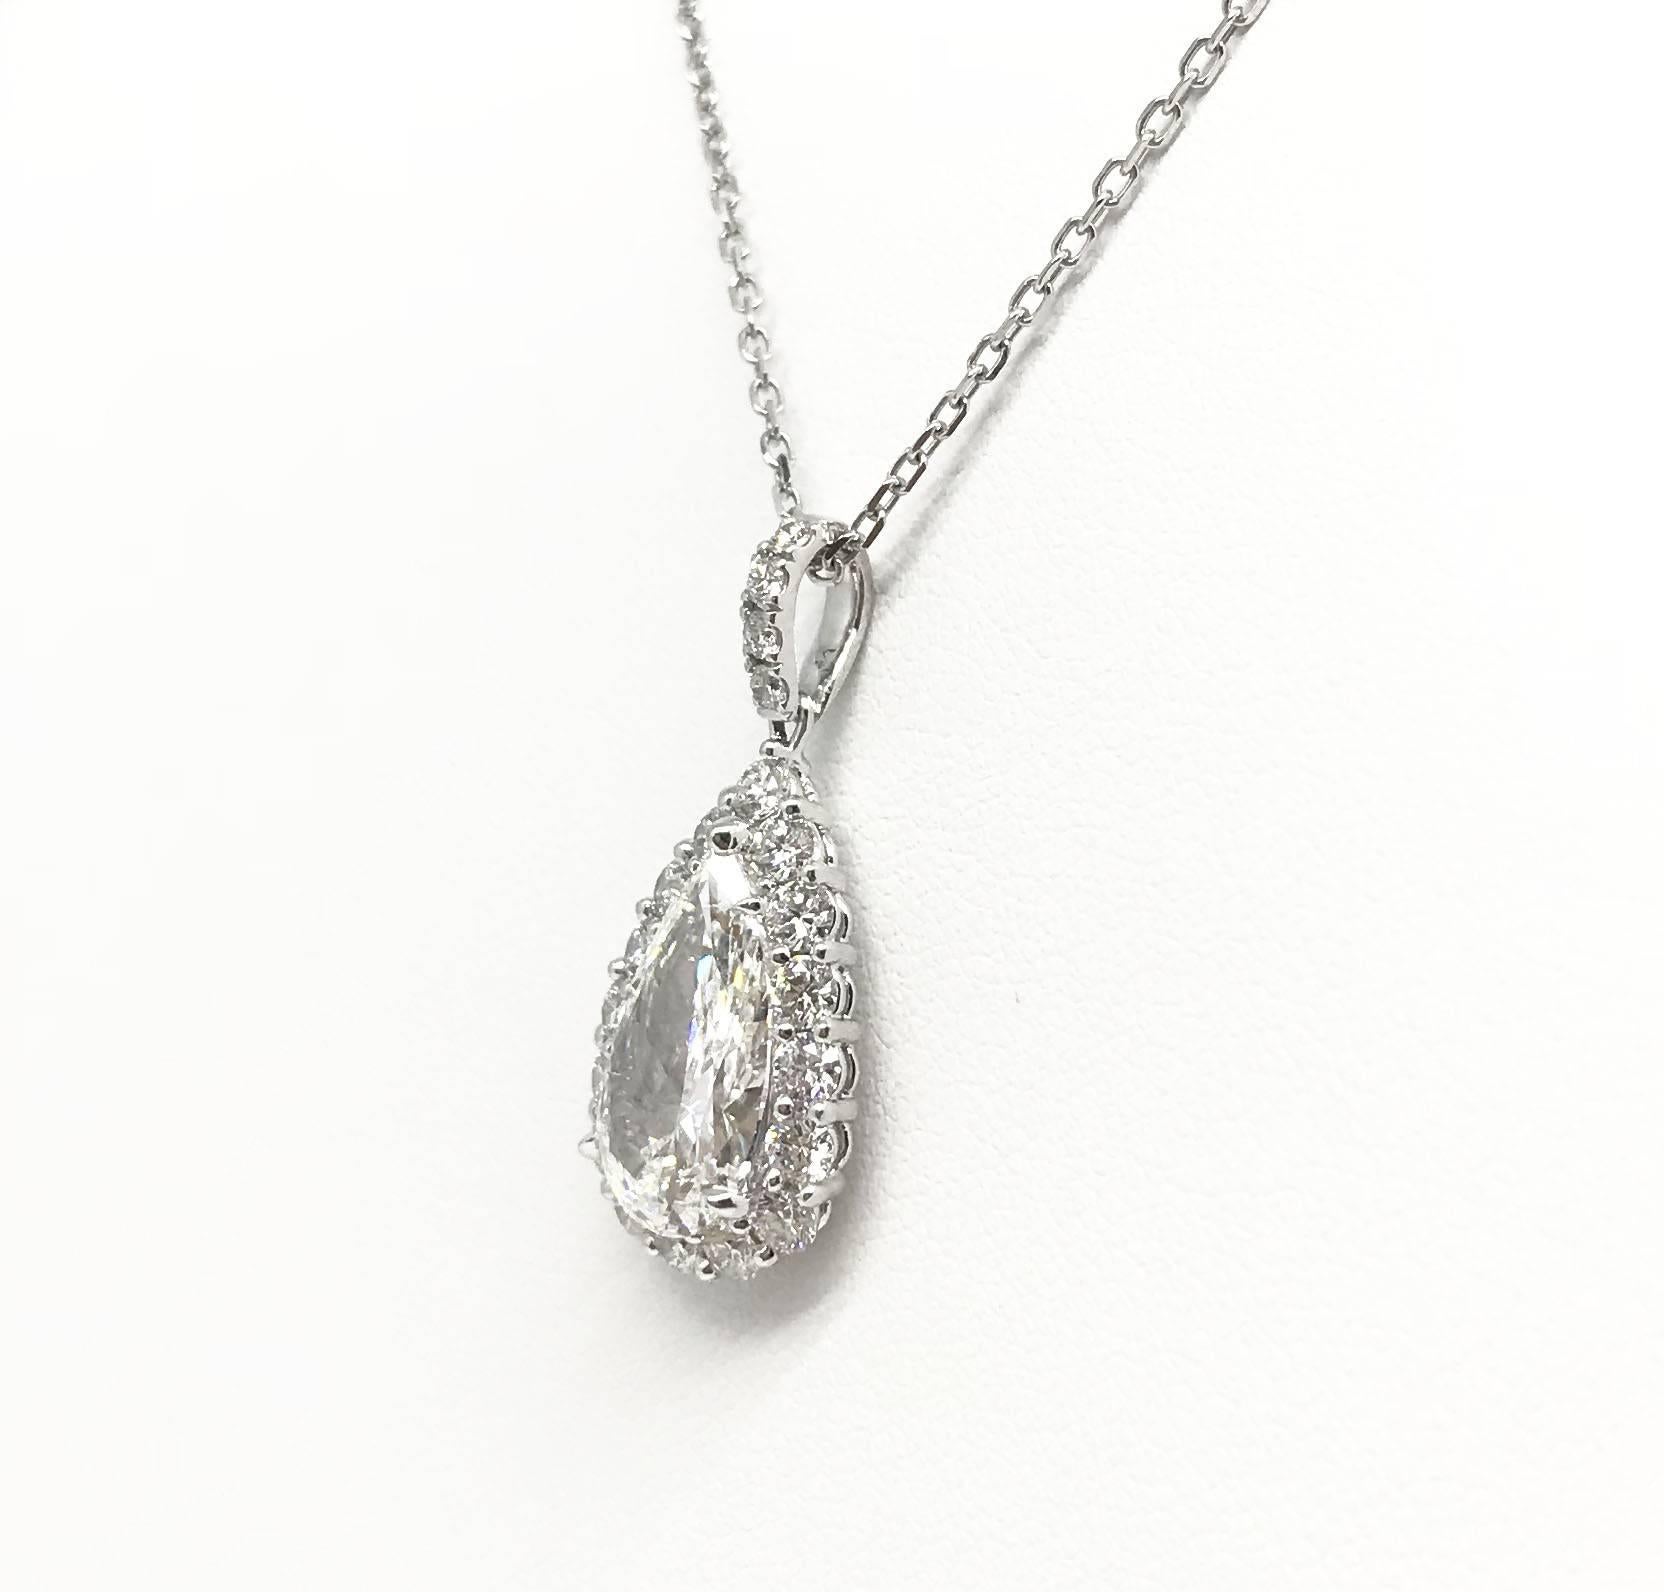 Ein exquisiter birnenförmiger Diamant von 3,17 Karat VS1 in Farbe H, umgeben von 1,07 Karat in Pflastersteinfassung, ist eine unwiderstehliche Wahl für sie. Das Stück ist in Platin gefasst. Kette nicht enthalten.

